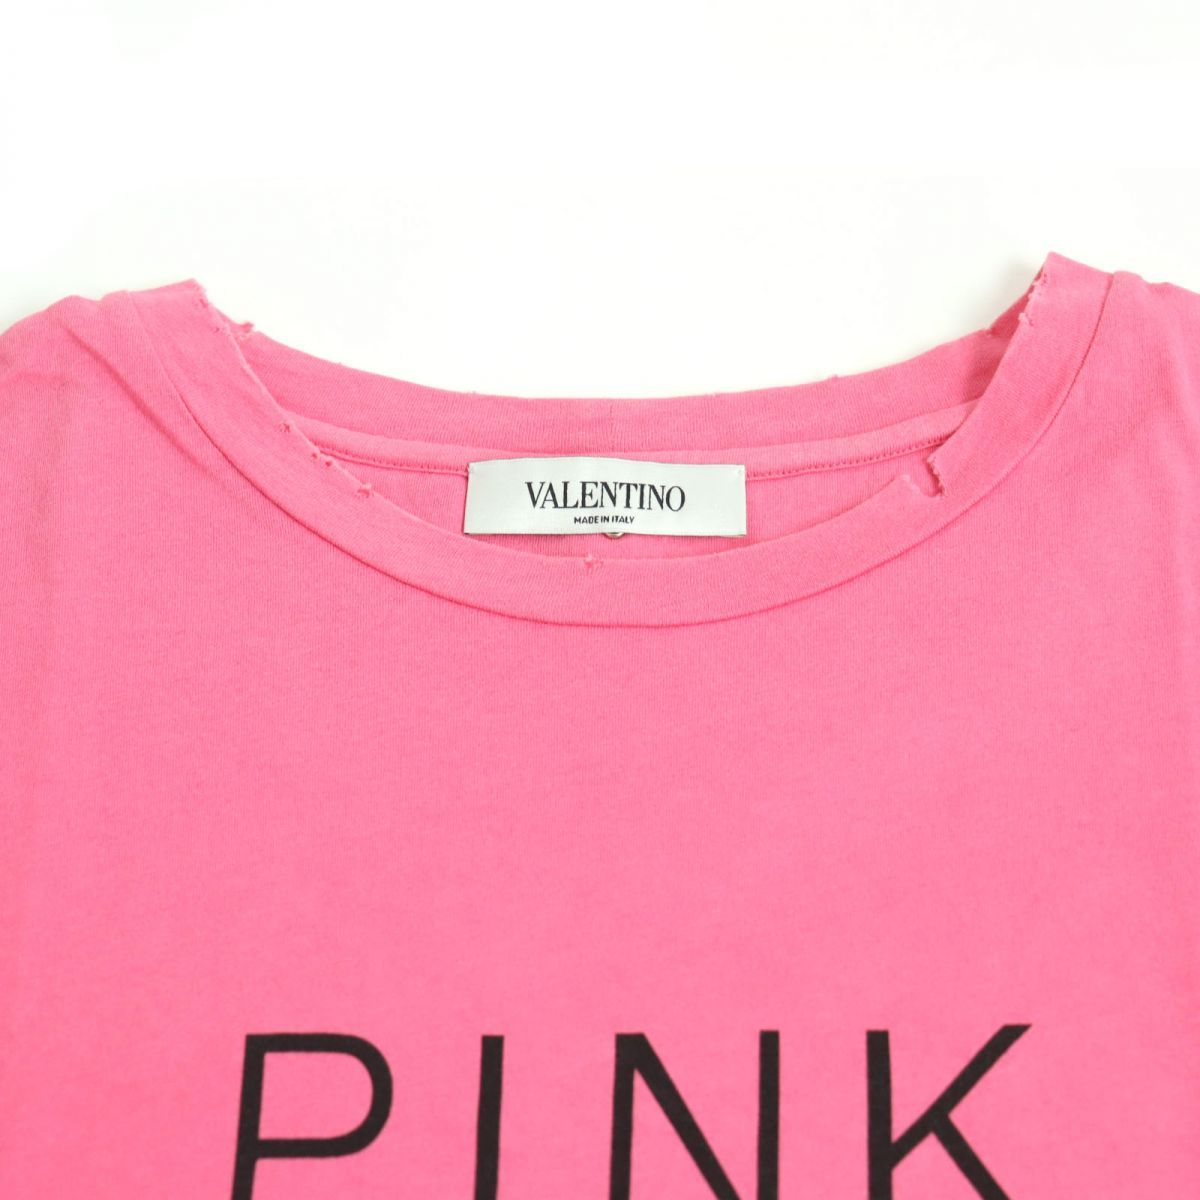 ヴァレンチノ×ジェイミー・リード プリント 半袖Tシャツ メンズ ピンク